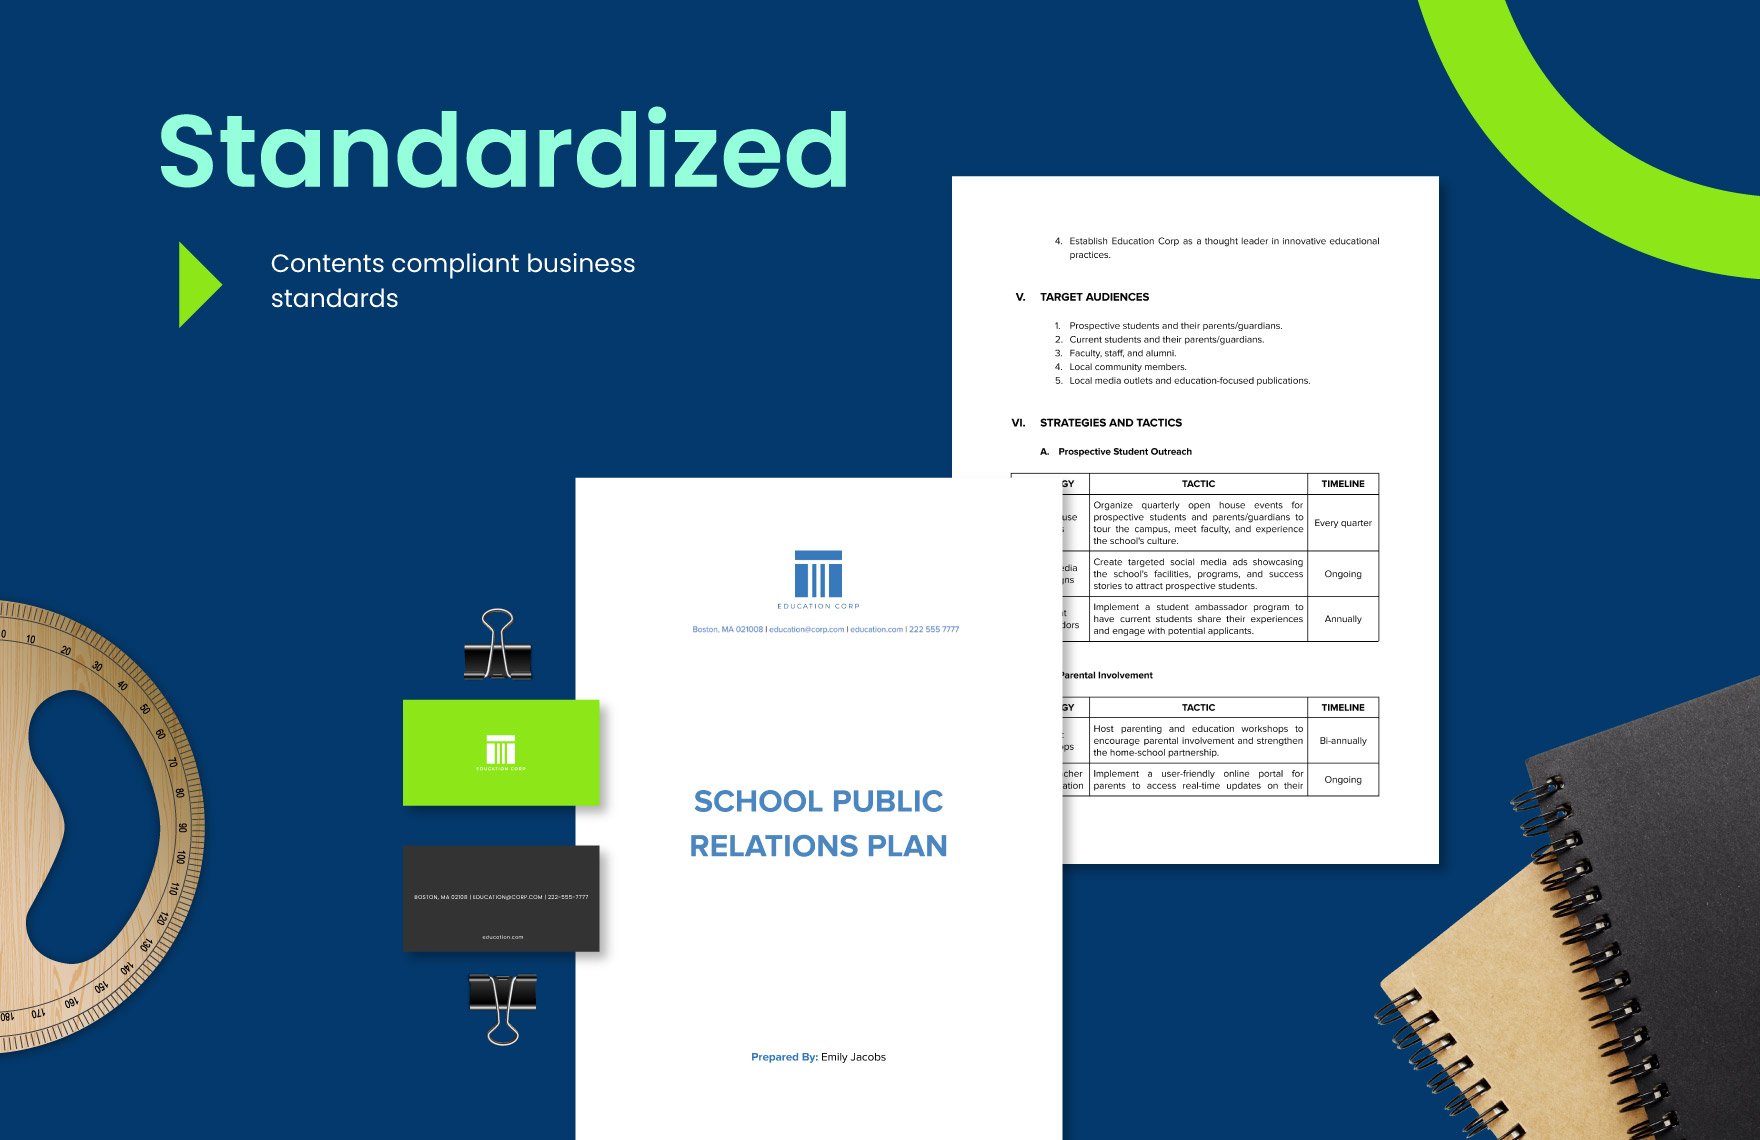 10 Education Public Relations Template Bundle